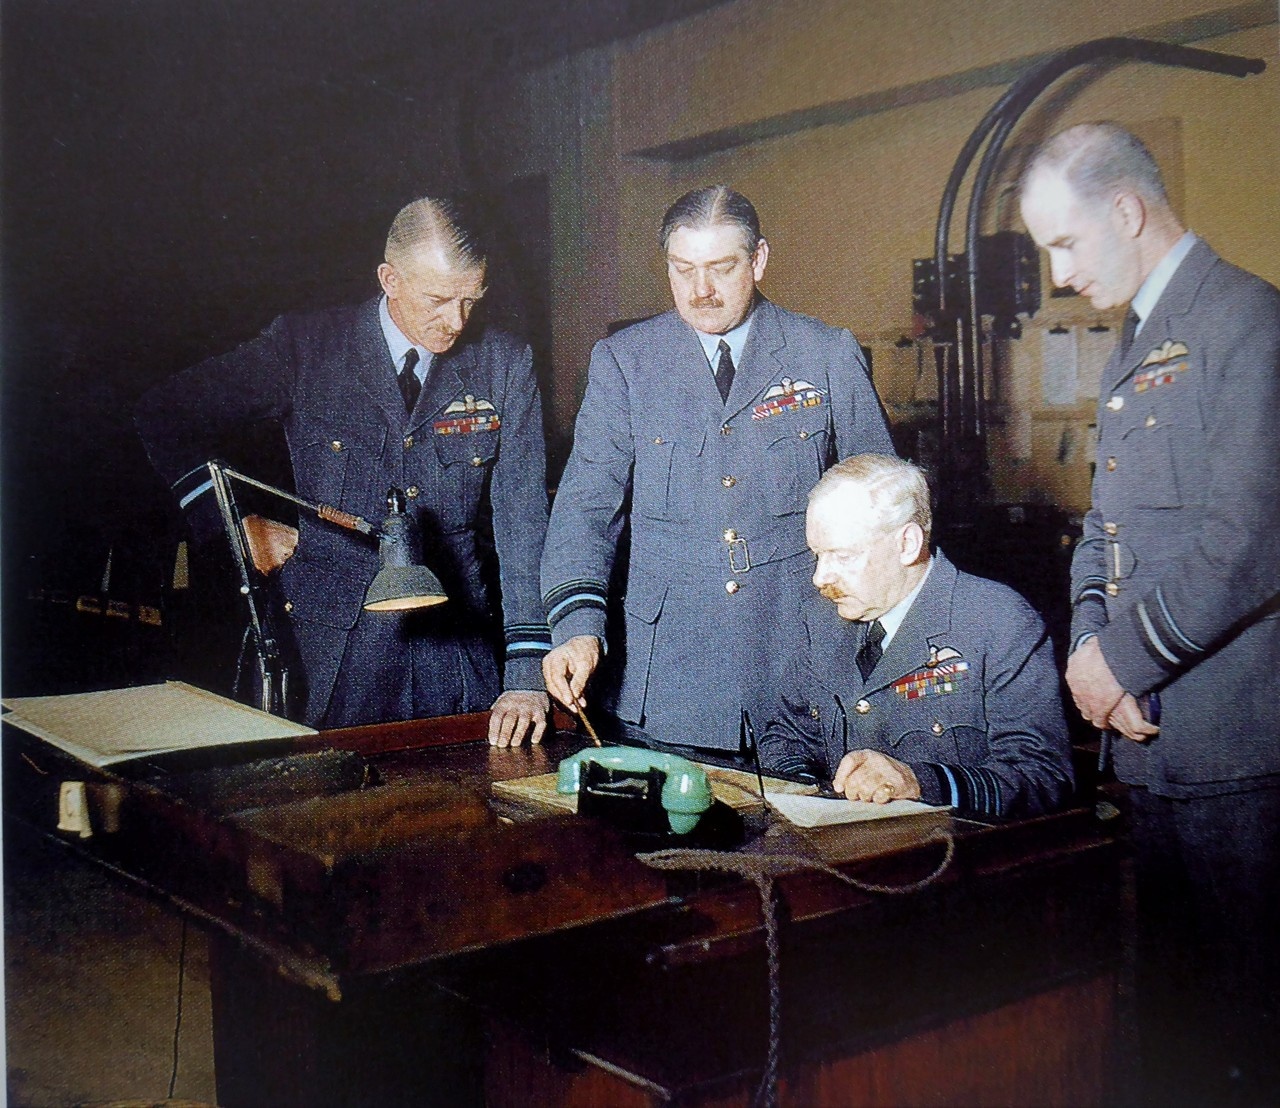 Глава Бомбардировочного командования ВВС Великобритании главный маршал авиации Артур Харрис за рабочим столом в своём штабе, февраль 1944 г.